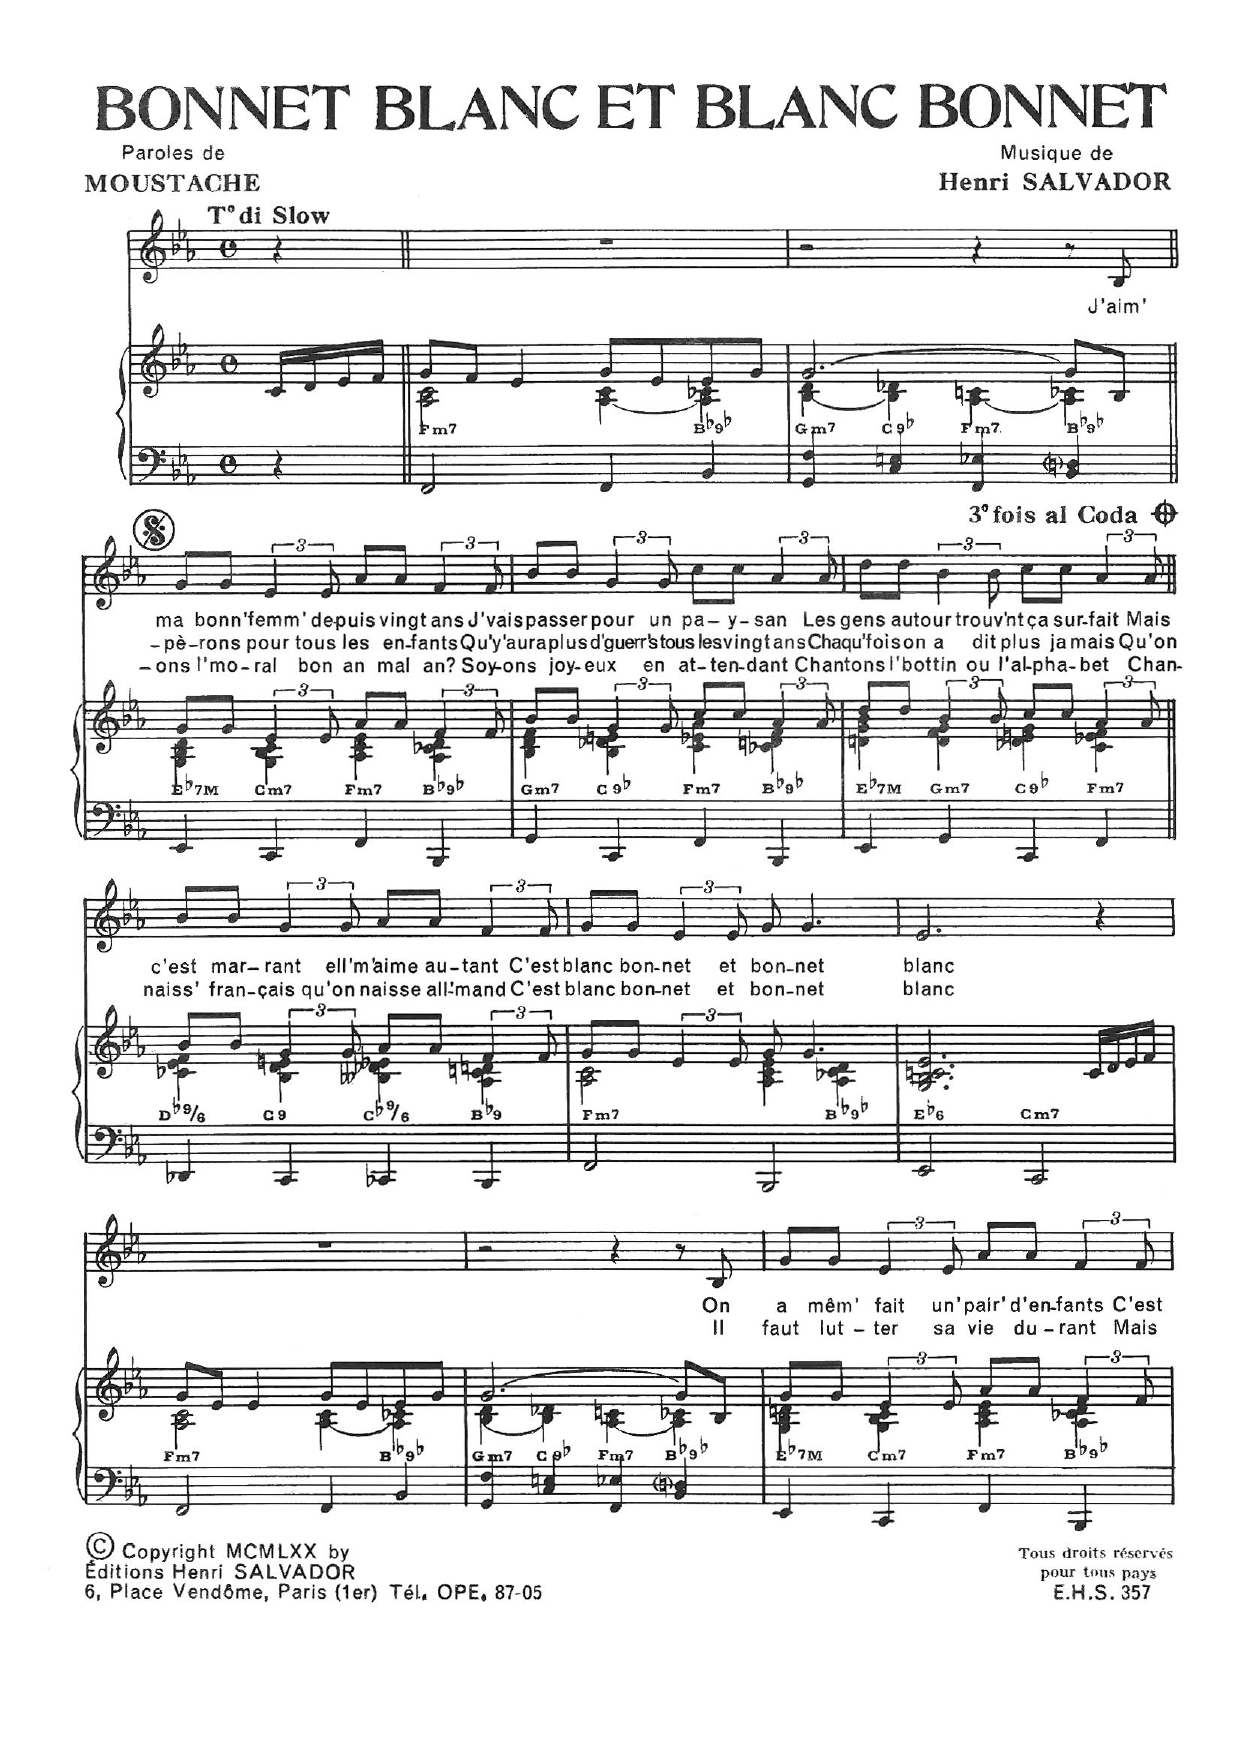 Henri Salvador Bonnet Blanc Et Blanc Bonnet sheet music notes and chords arranged for Piano & Vocal